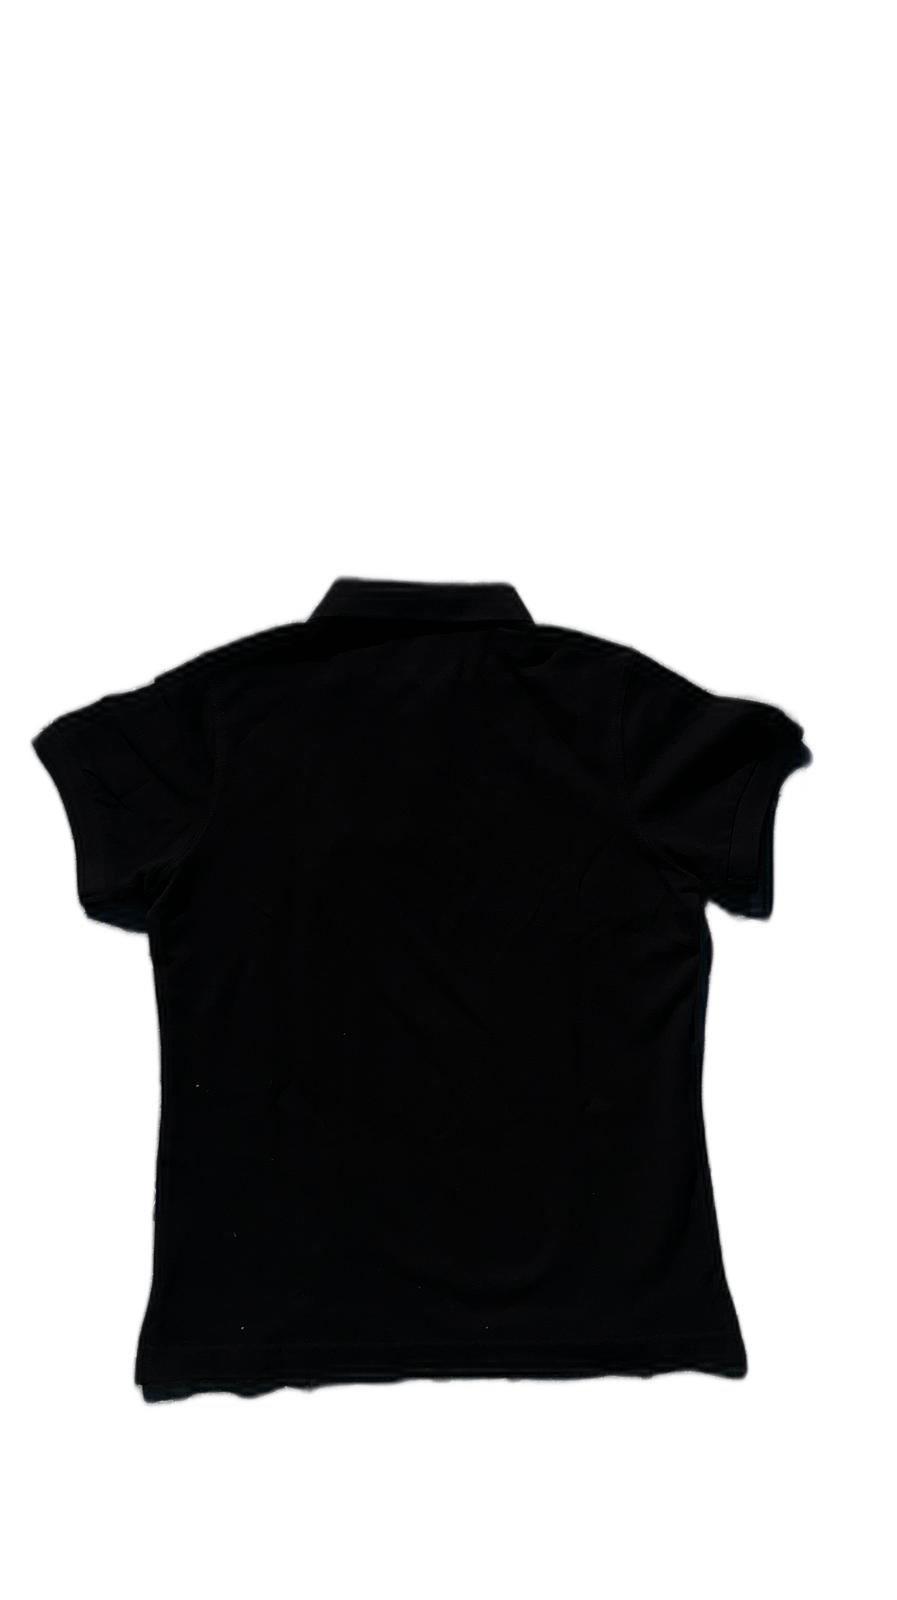 roter hirsch - Poloshirt in schwarz verschiedene Größen